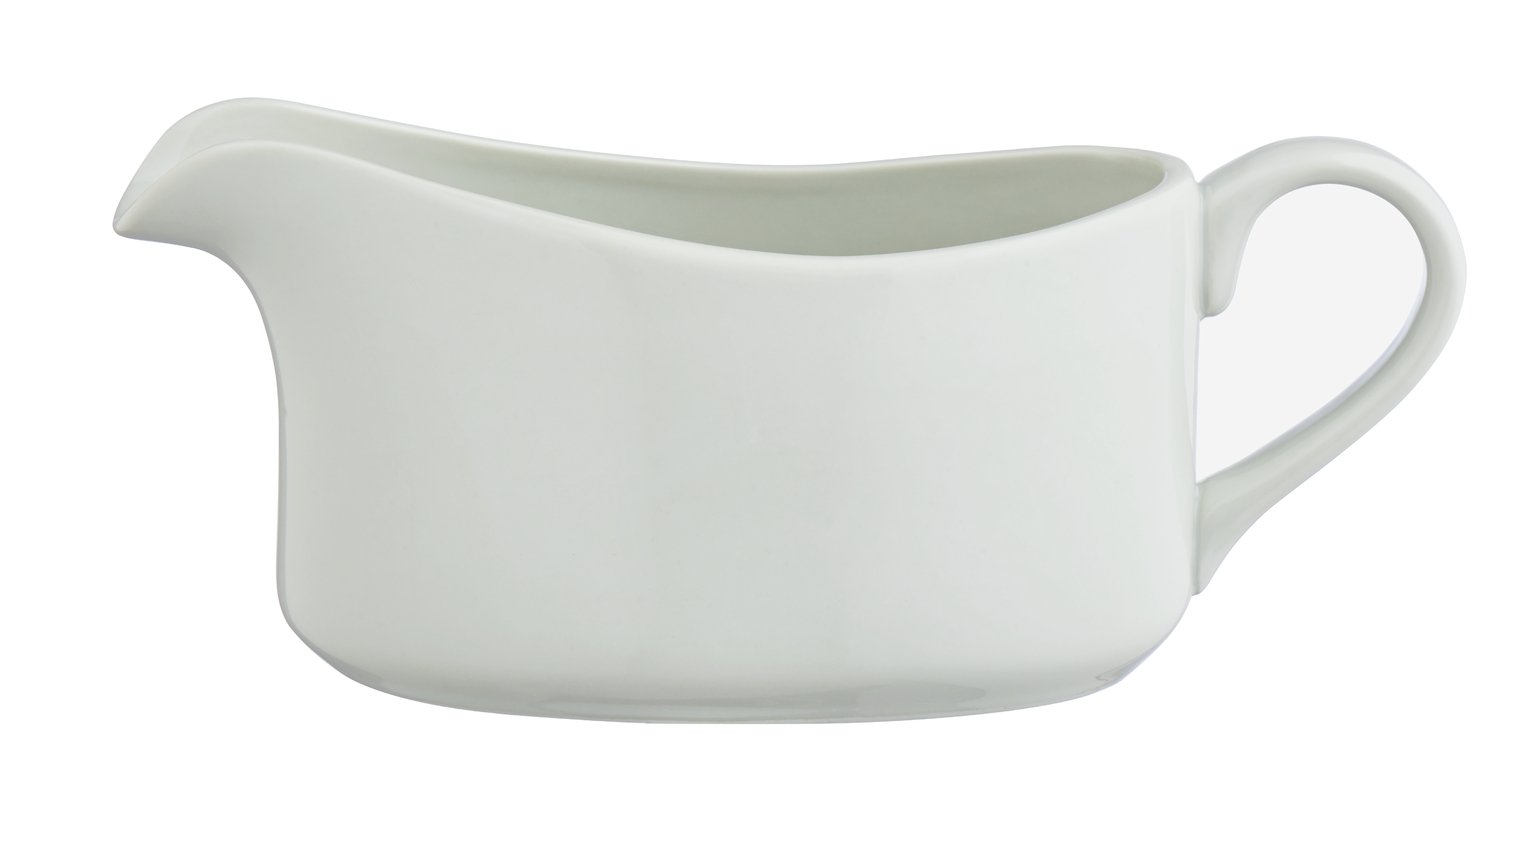 Argos Home Porcelain Gravy Boat - White